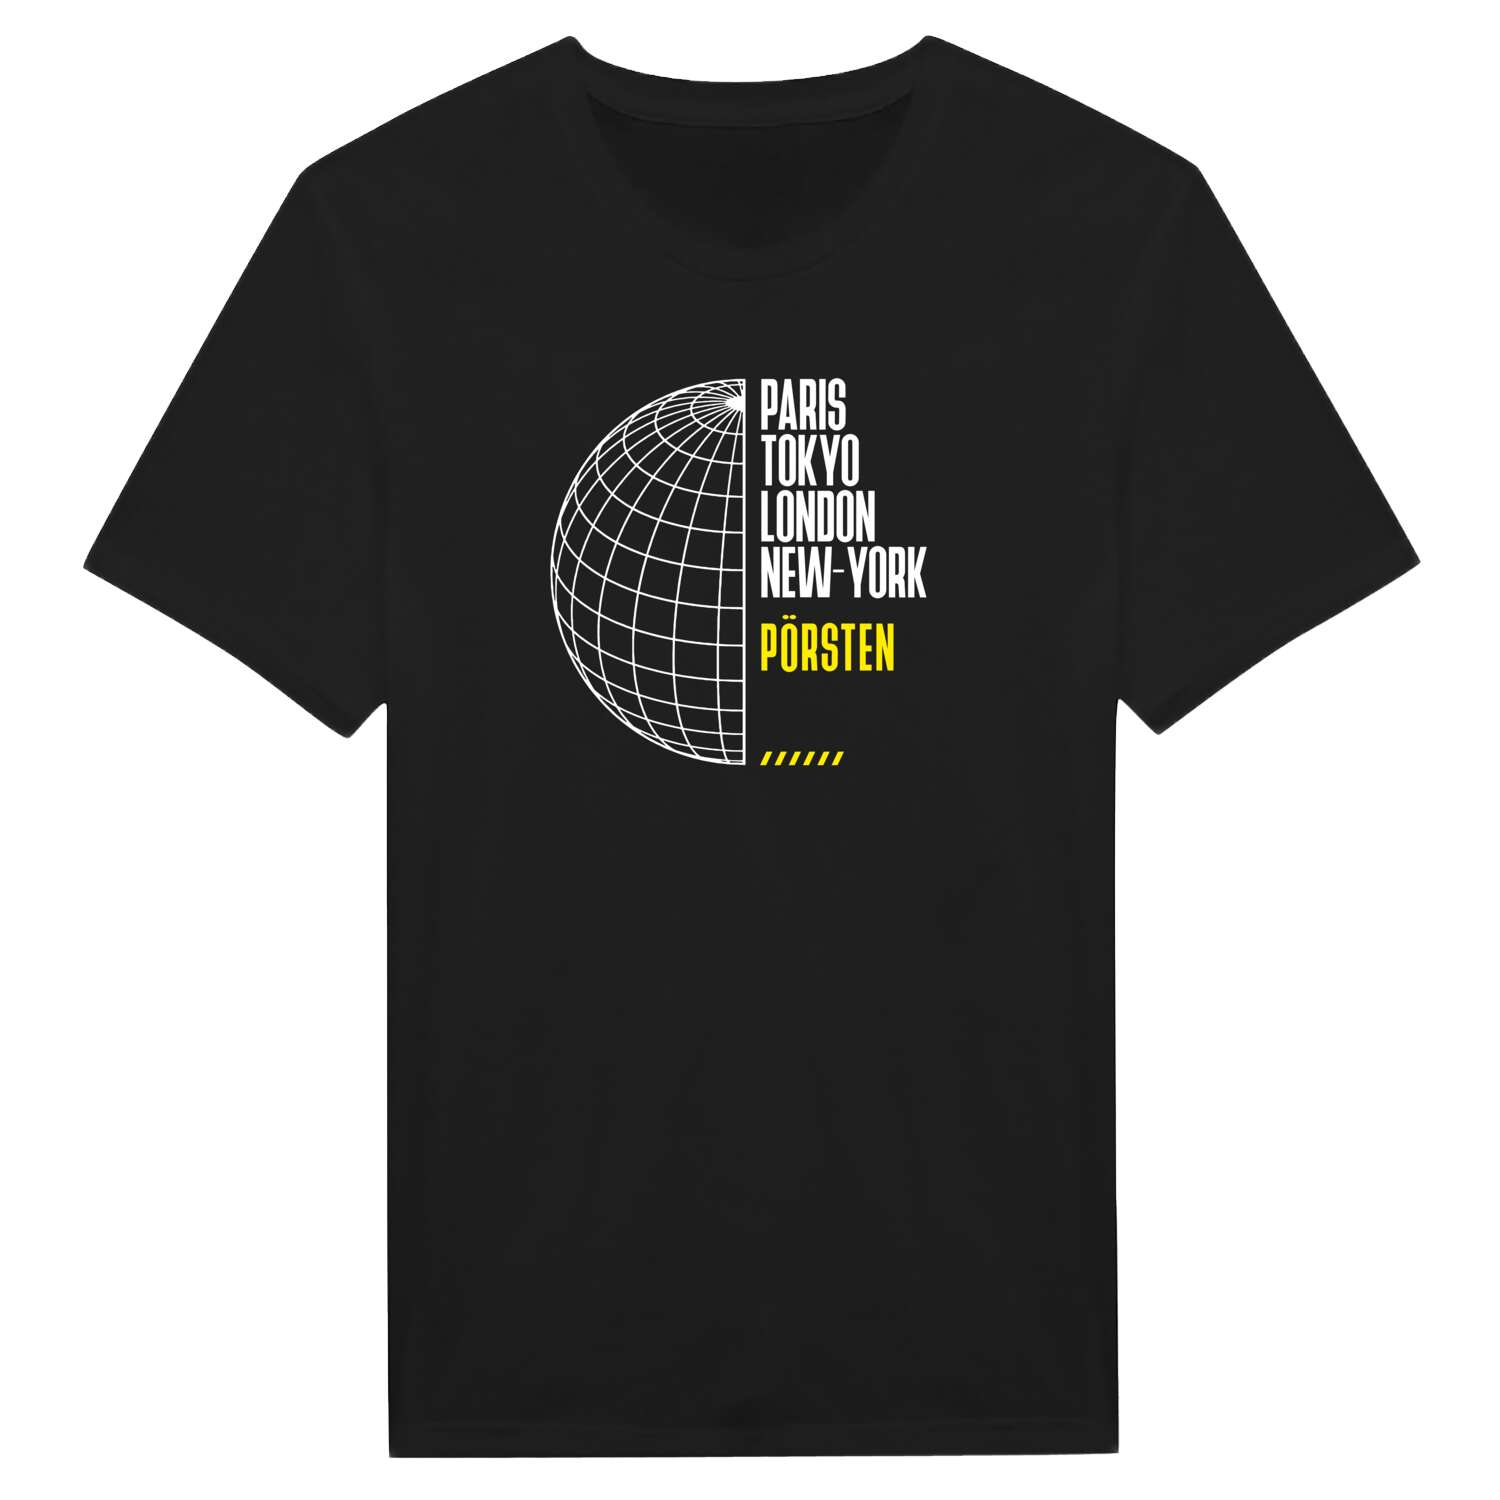 Pörsten T-Shirt »Paris Tokyo London«